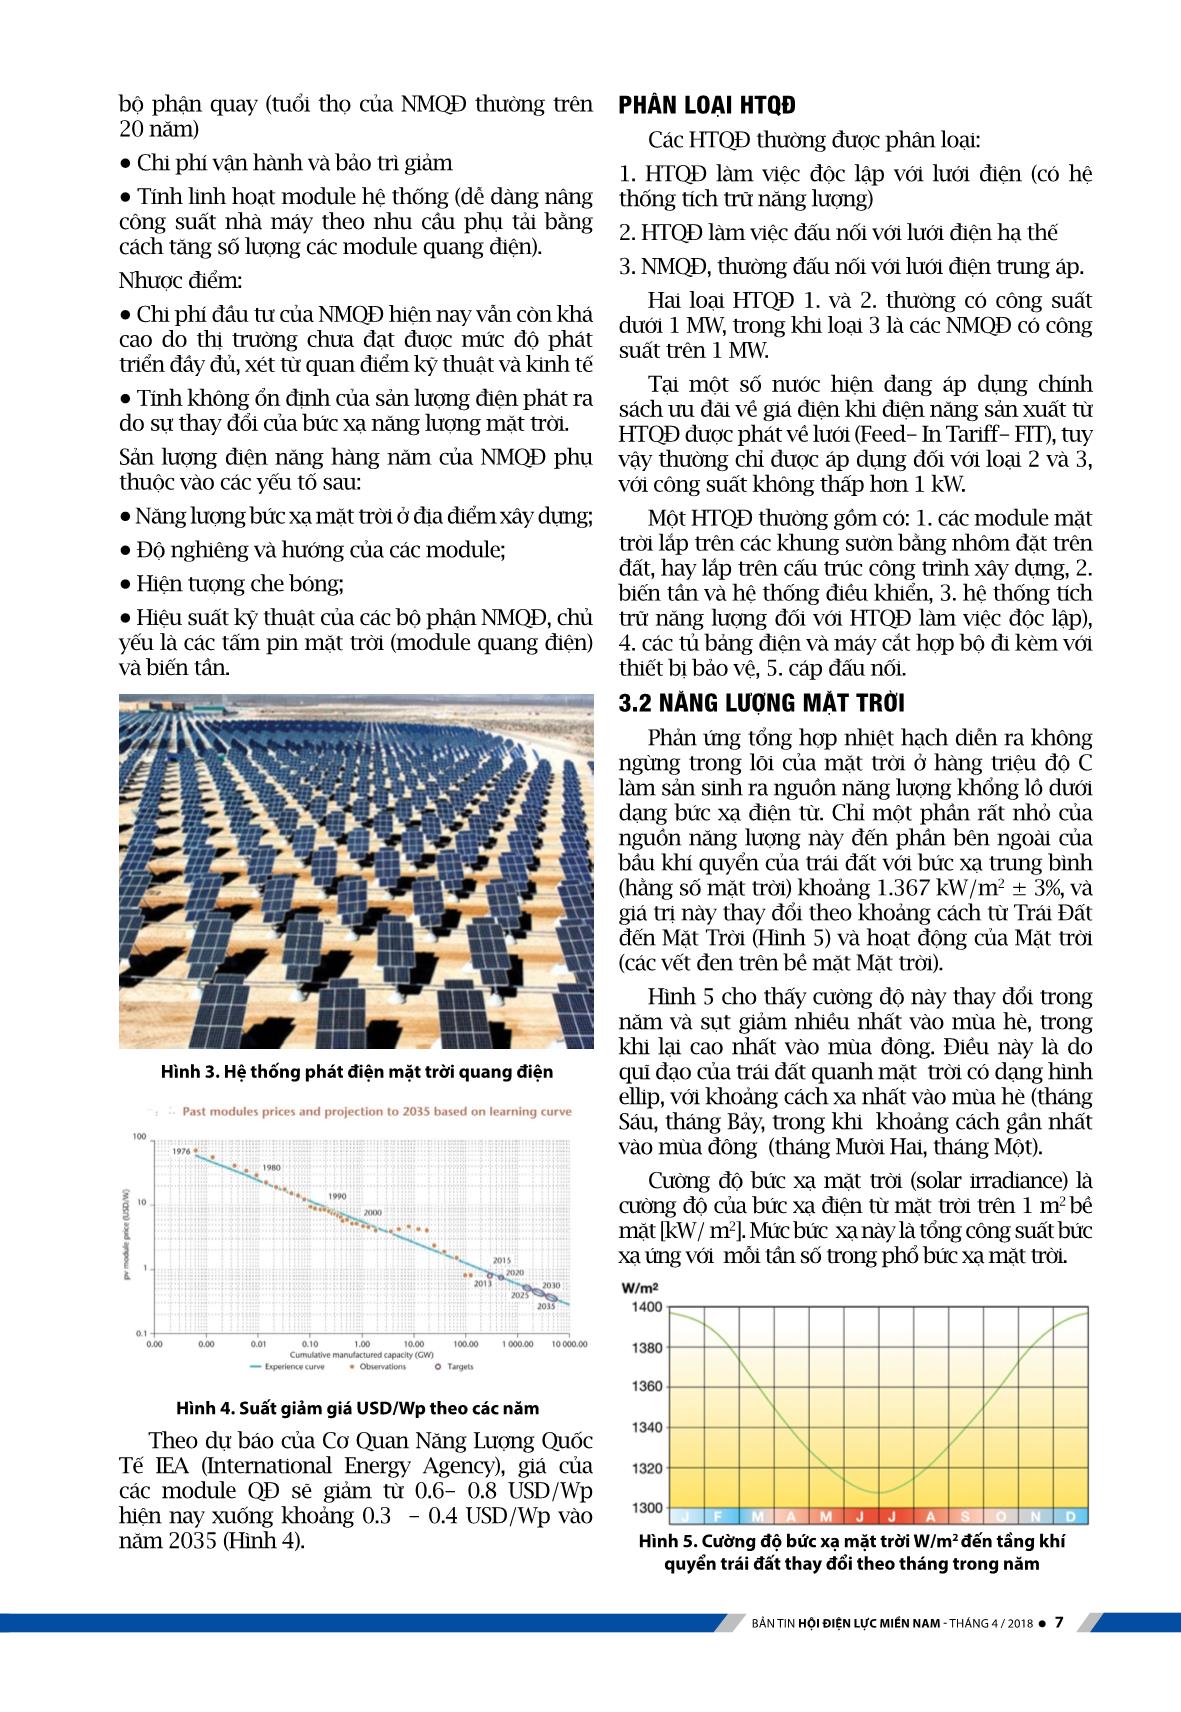 Kỹ thuật hệ thống điện mặt trời với công nghệ quang điện trang 3